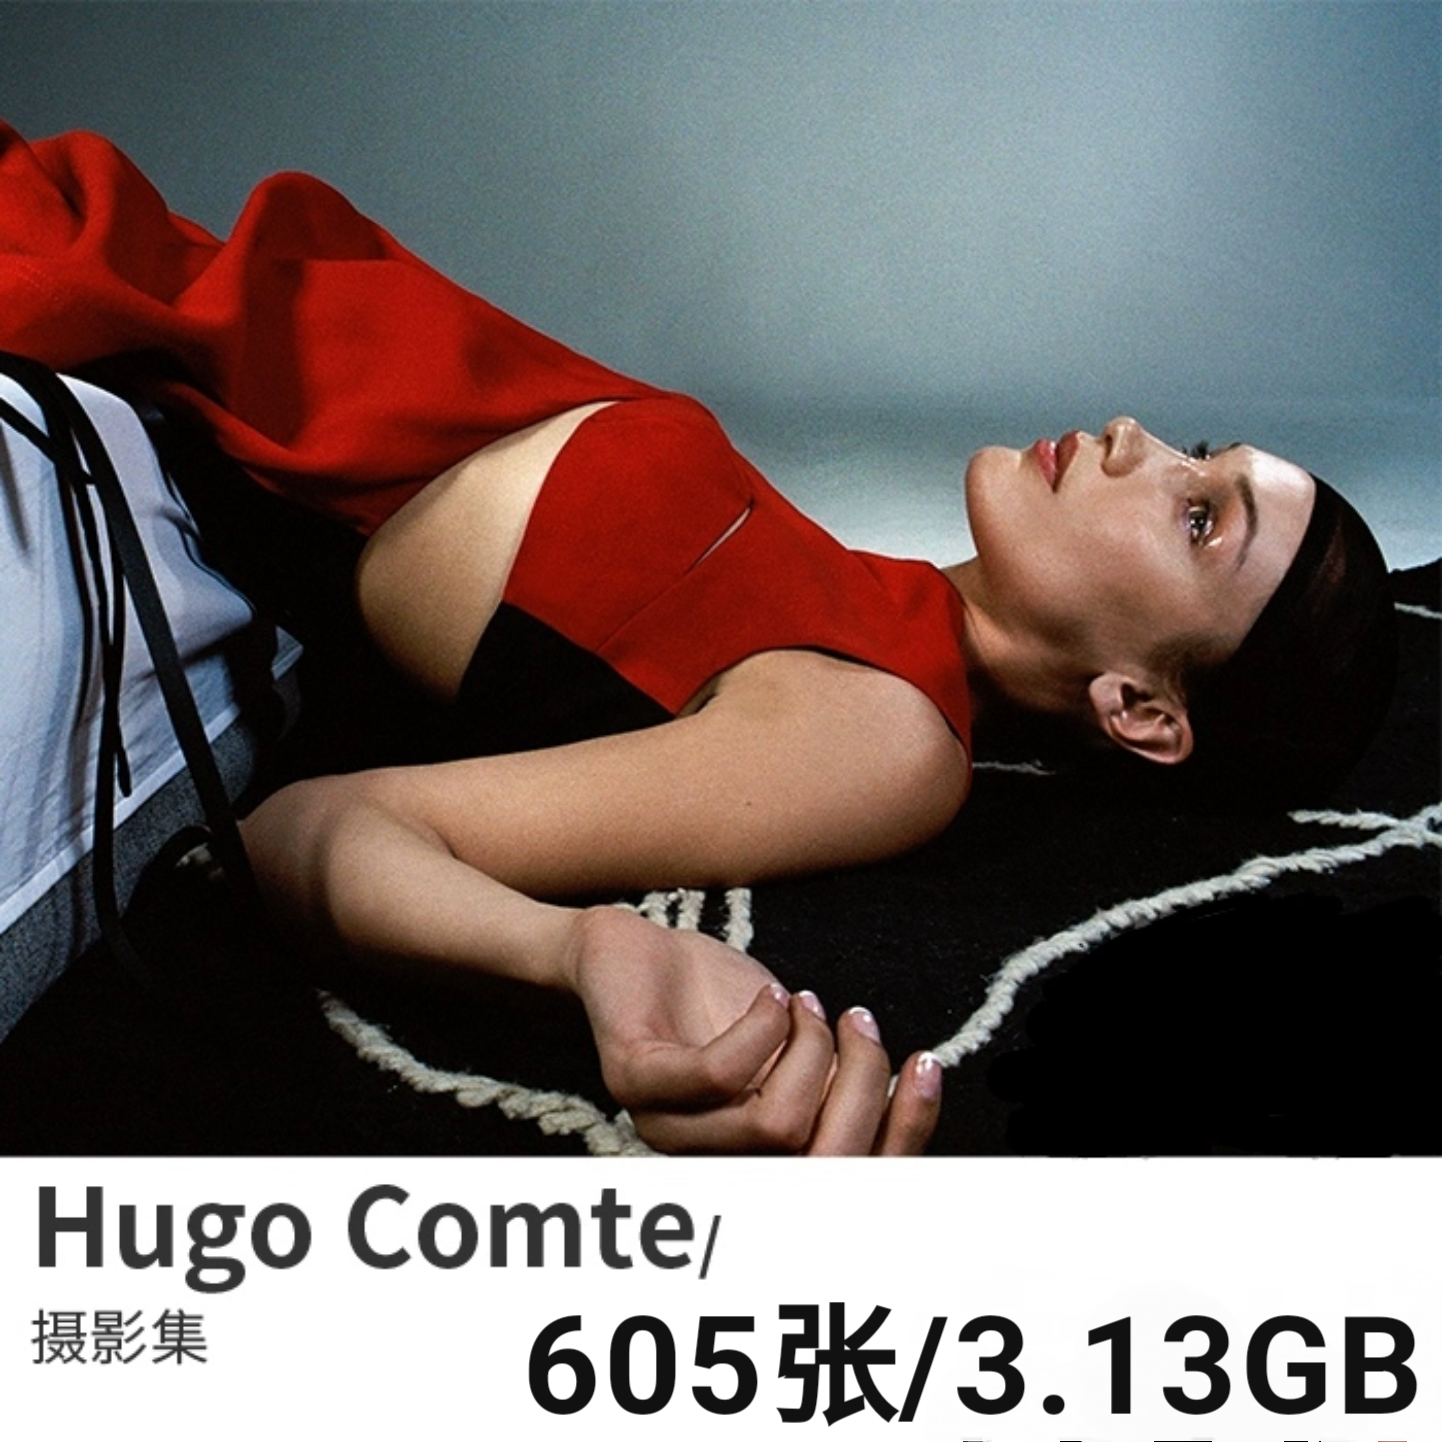 Hugo Comte  法国新锐商业时尚人像摄影师作品集高清图片素材资料